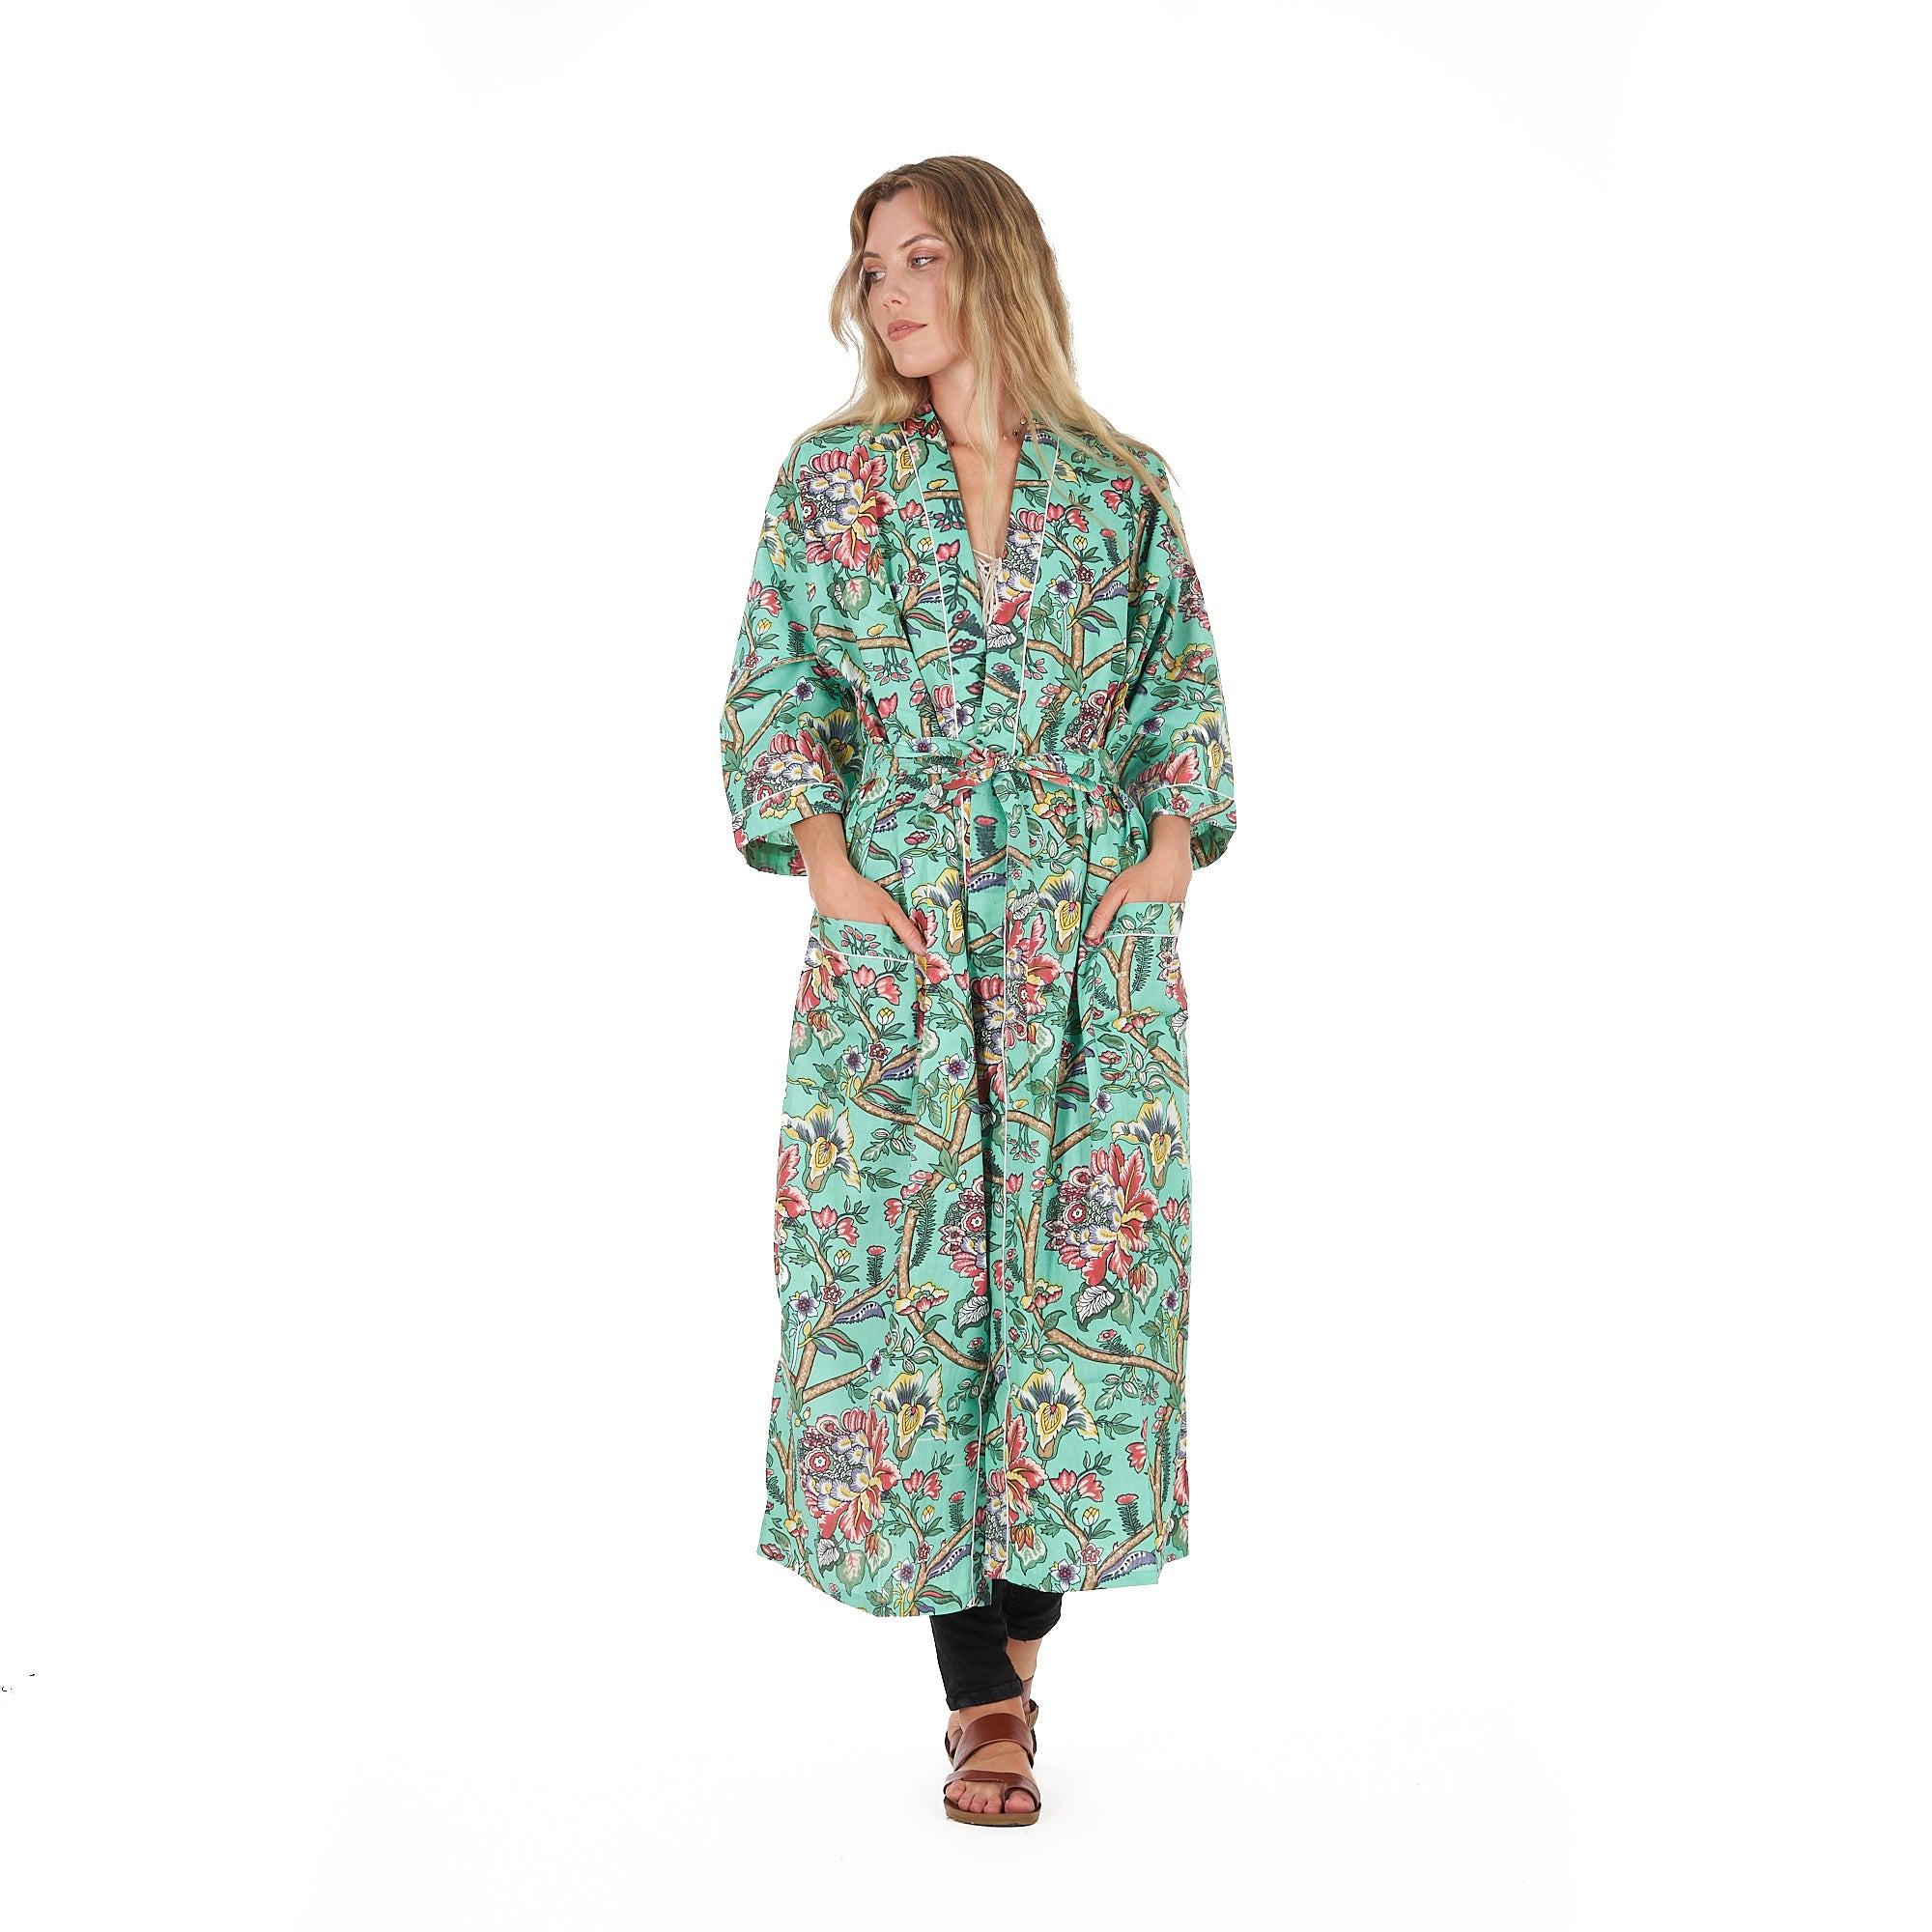 'Calm & Collected' 100% Cotton Kimono Robe